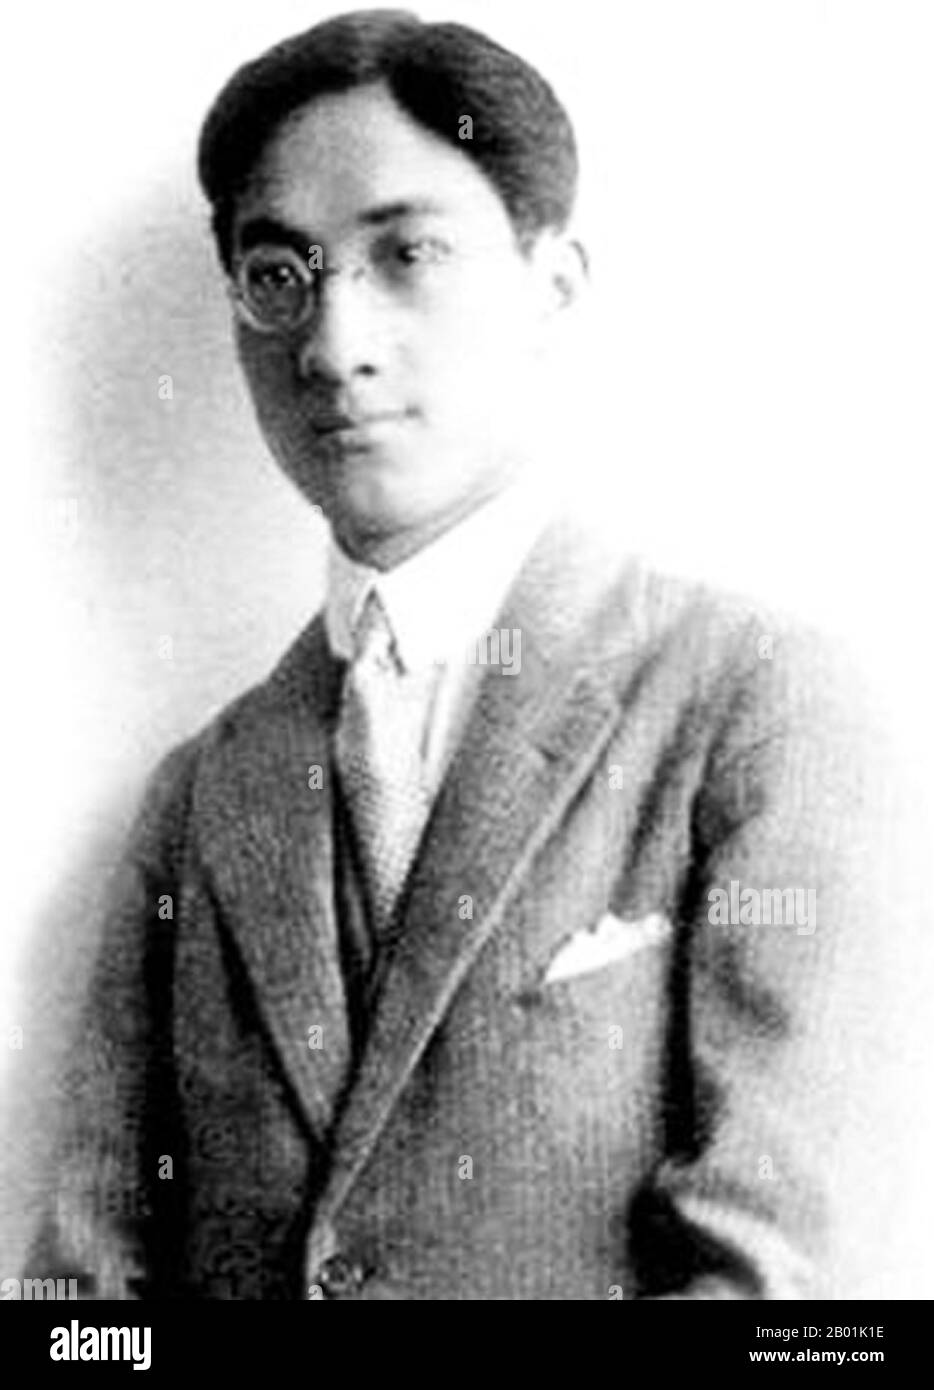 Cina: Xu Zhimo, poeta e intellettuale cinese (15 gennaio 1897 - 19 novembre 1931), 1931. Xu Zhimo è stato un poeta cinese dell'inizio del XX secolo. Gli fu dato il nome di Zhangxu e il nome di cortesia di Yousen (槱森). In seguito cambiò il suo nome di cortesia in Zhimo (志摩). Egli è romanticizzato come perseguendo l'amore, la libertà e la bellezza per tutta la sua vita (dalle parole di Hu Shi). Promosse la forma della poesia cinese moderna, e quindi diede enormi contributi alla letteratura cinese moderna. Foto Stock